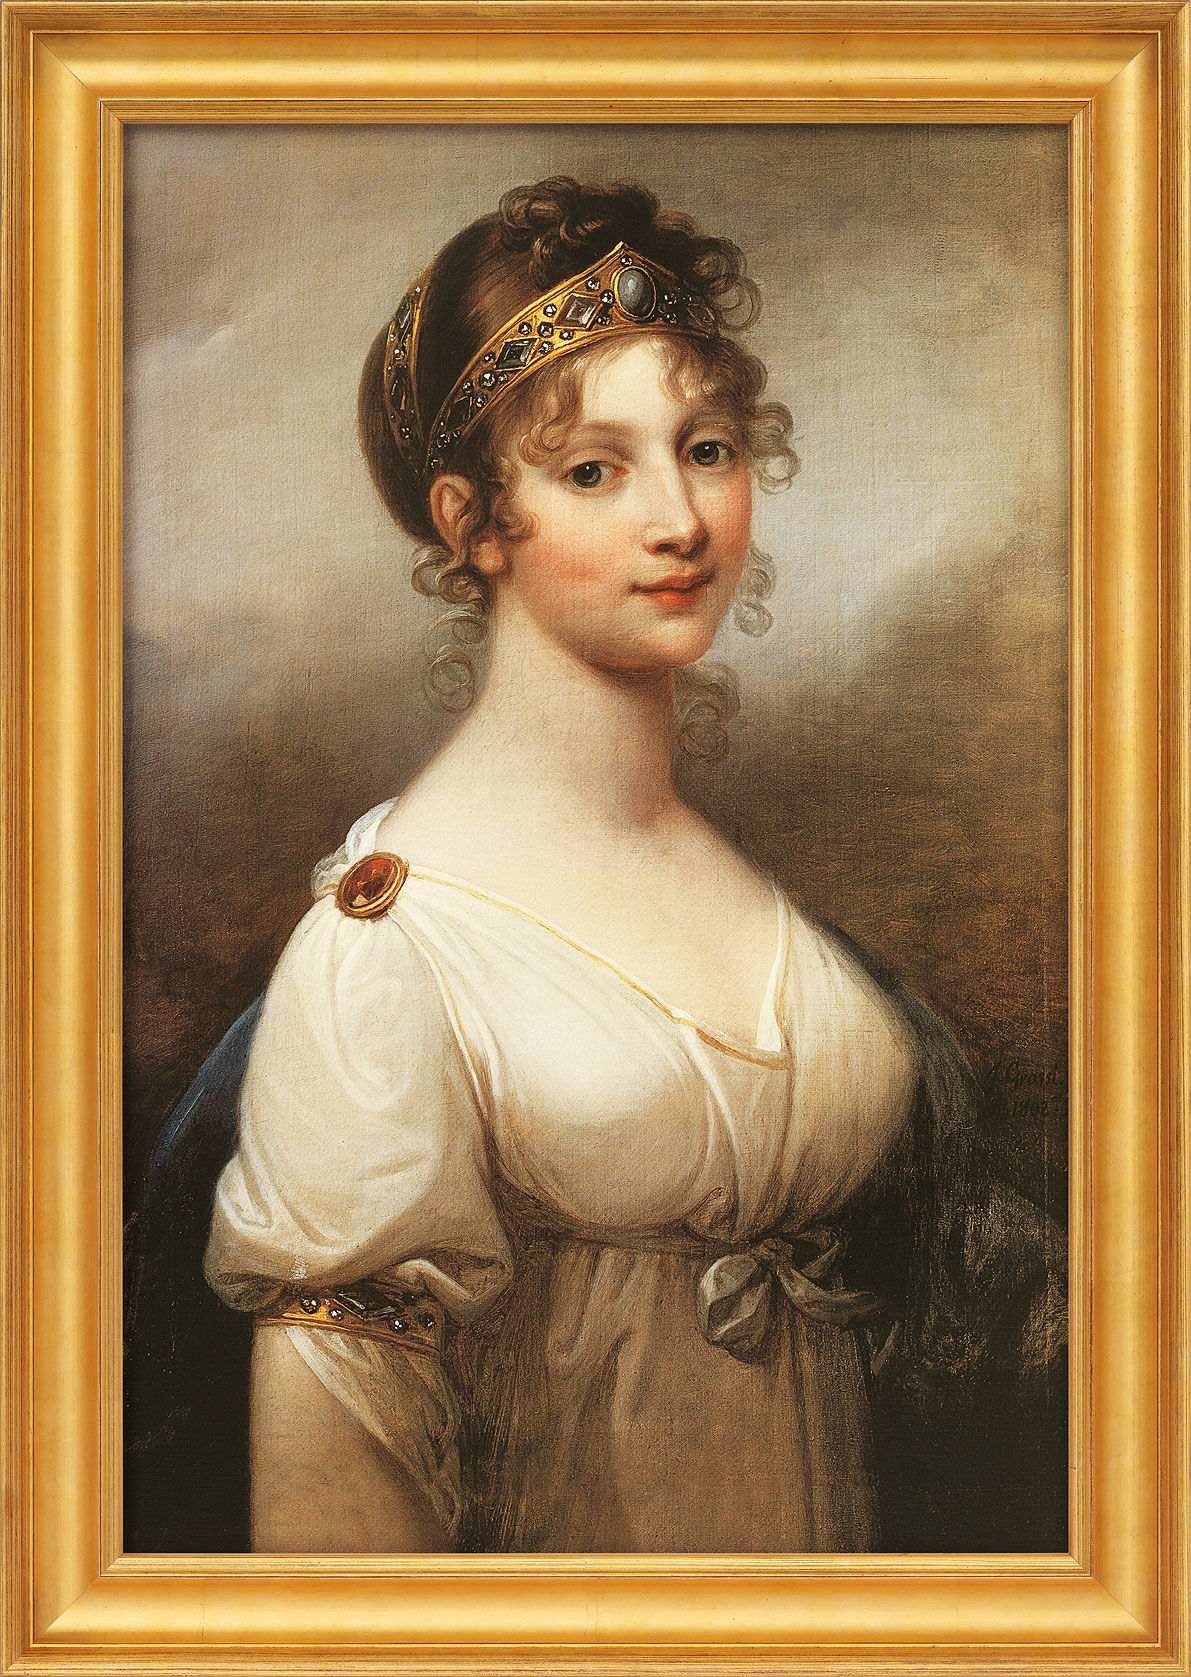 Bild "Luise, Königin von Preußen" (1802), gerahmt von Joseph Grassi